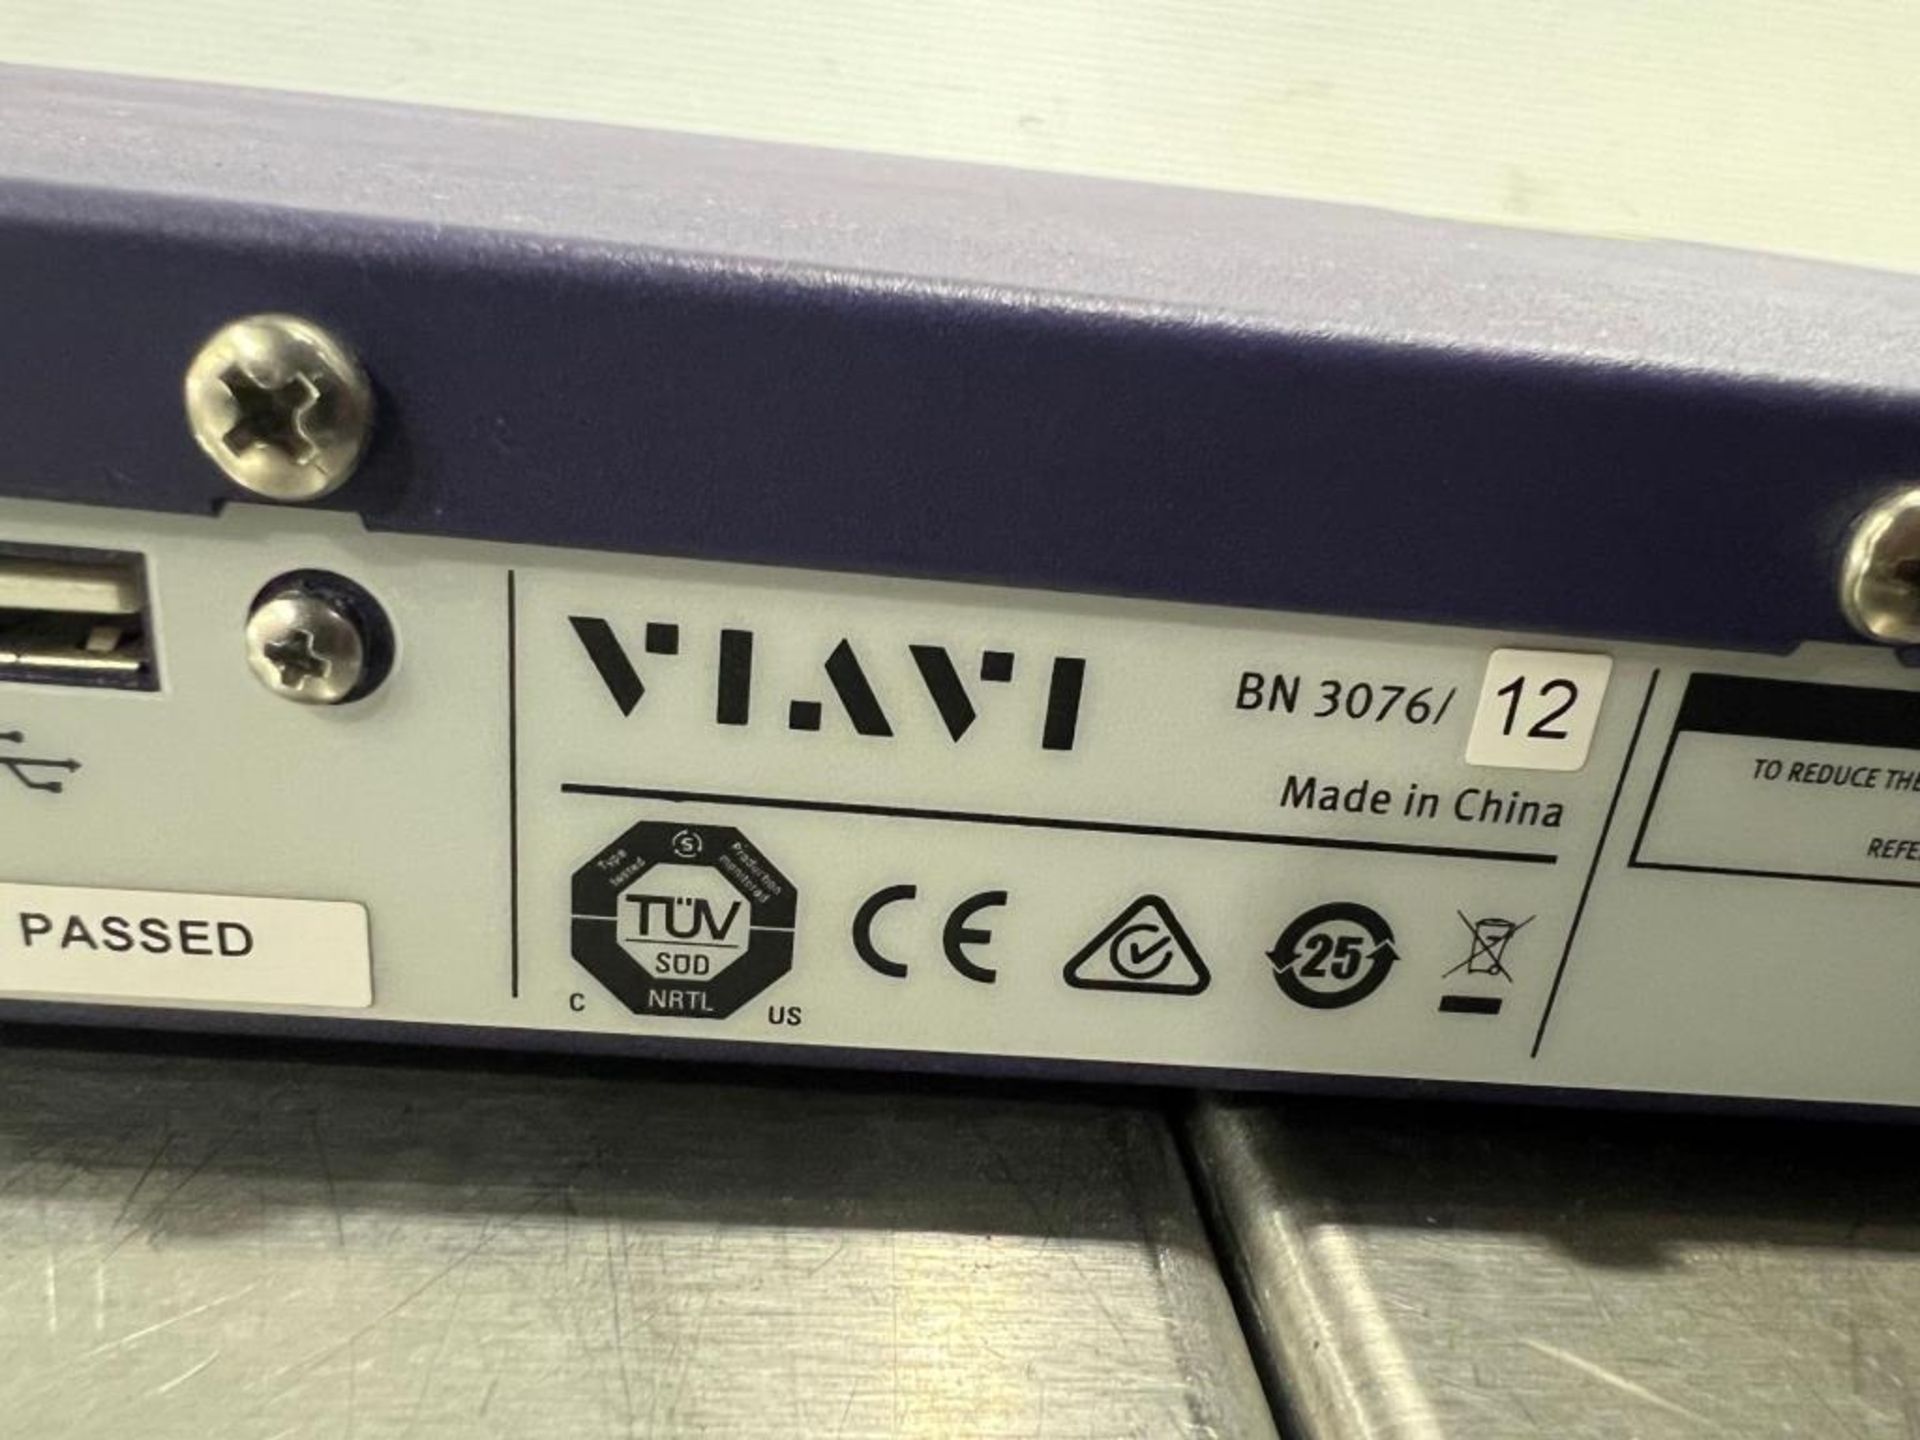 VIAVI Multiport Ethernet Test System - Image 4 of 5